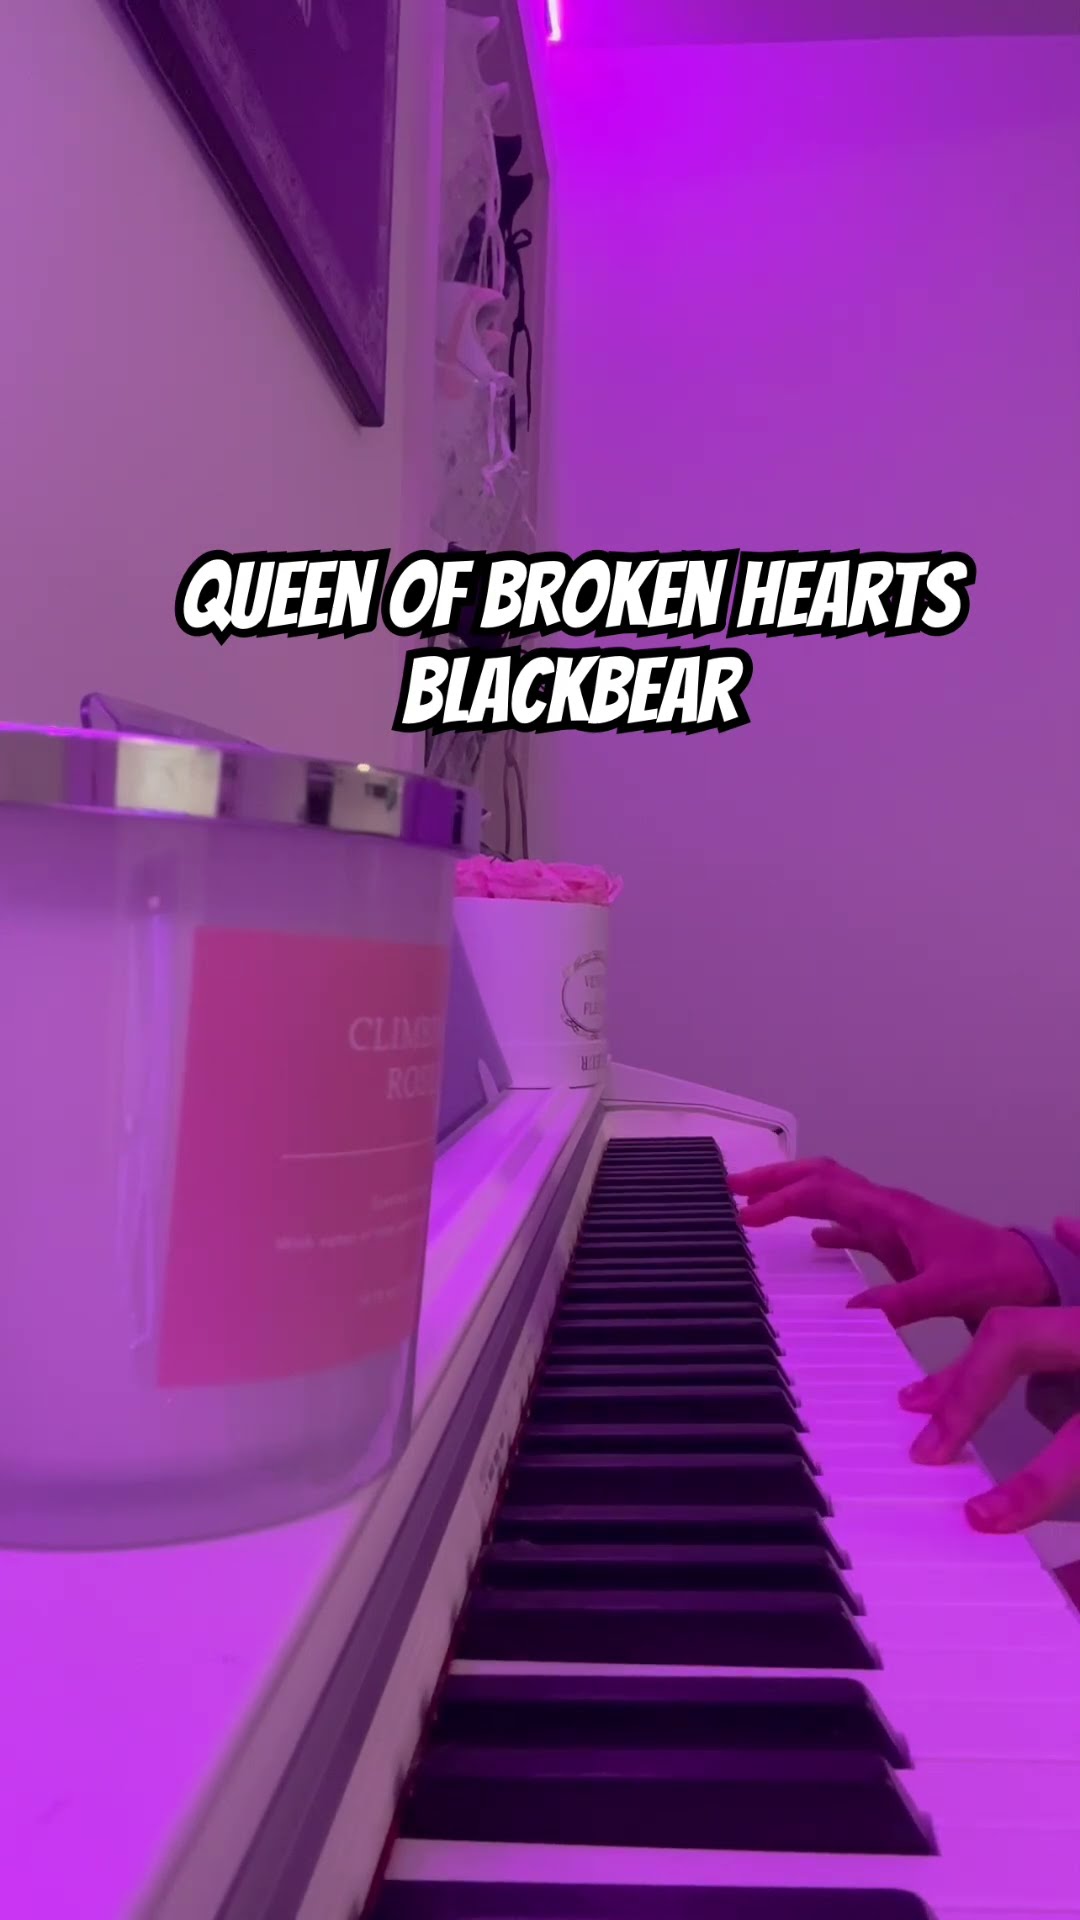 Queen of broken hearts by blackbear #piano #blackbear #tiktok - YouTube